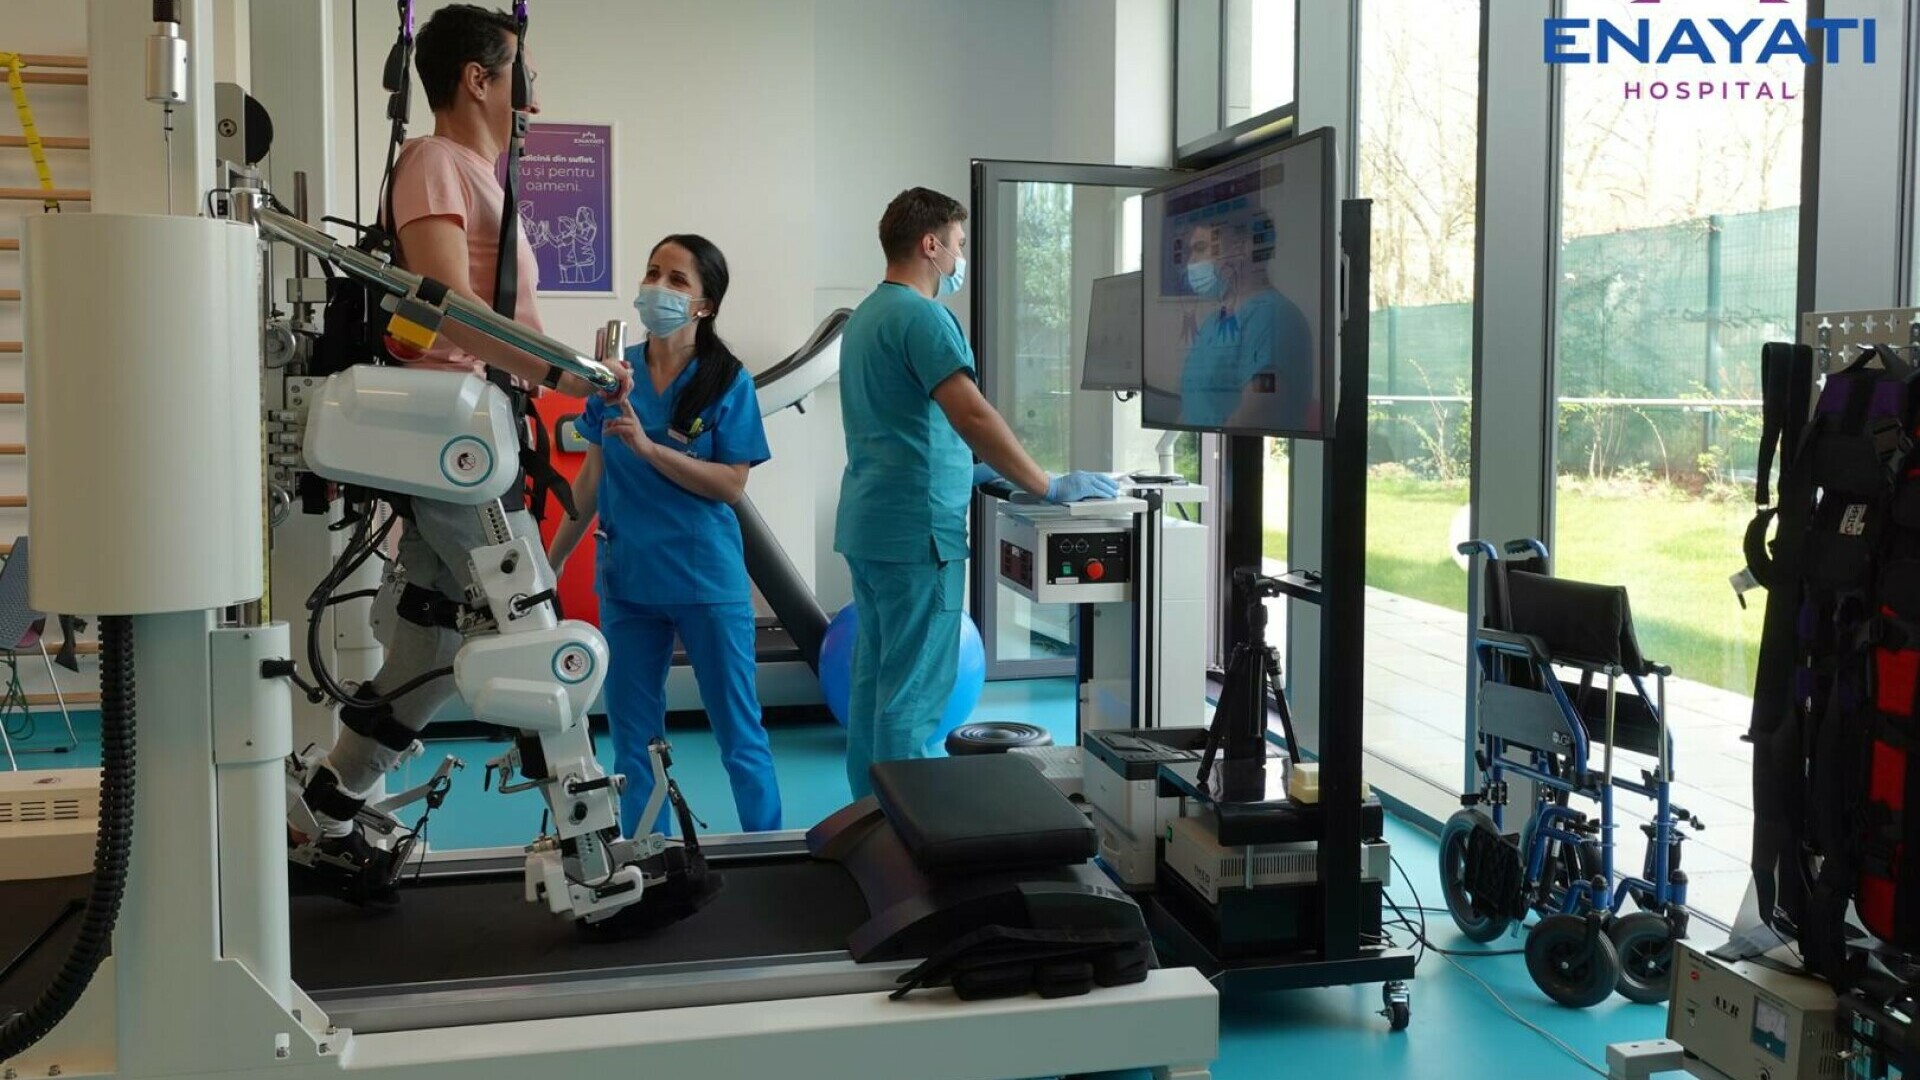 (P) Enayati Hospital dezvăluie #roboterapeutul, un aparat inovator care redă mobilitatea și încrederea pacienților